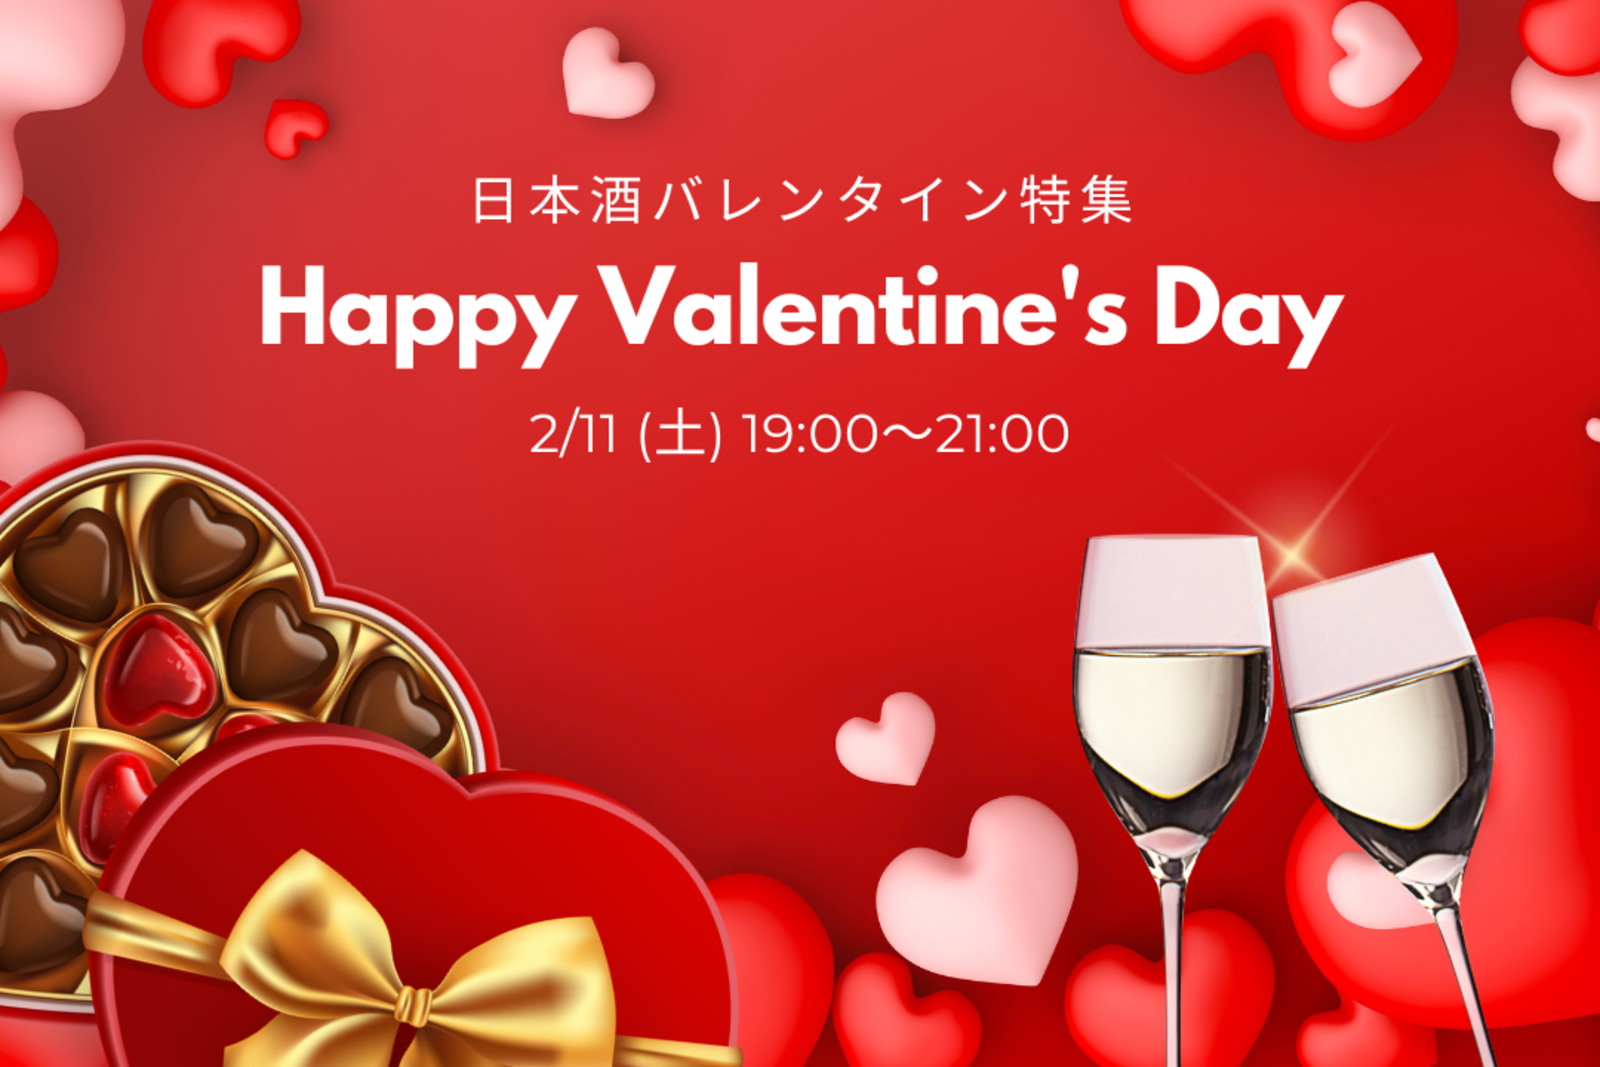 【まだまだ募集中✨】日本酒バレンタイン会💗チョコレートと一緒に日本酒を楽しもう✨